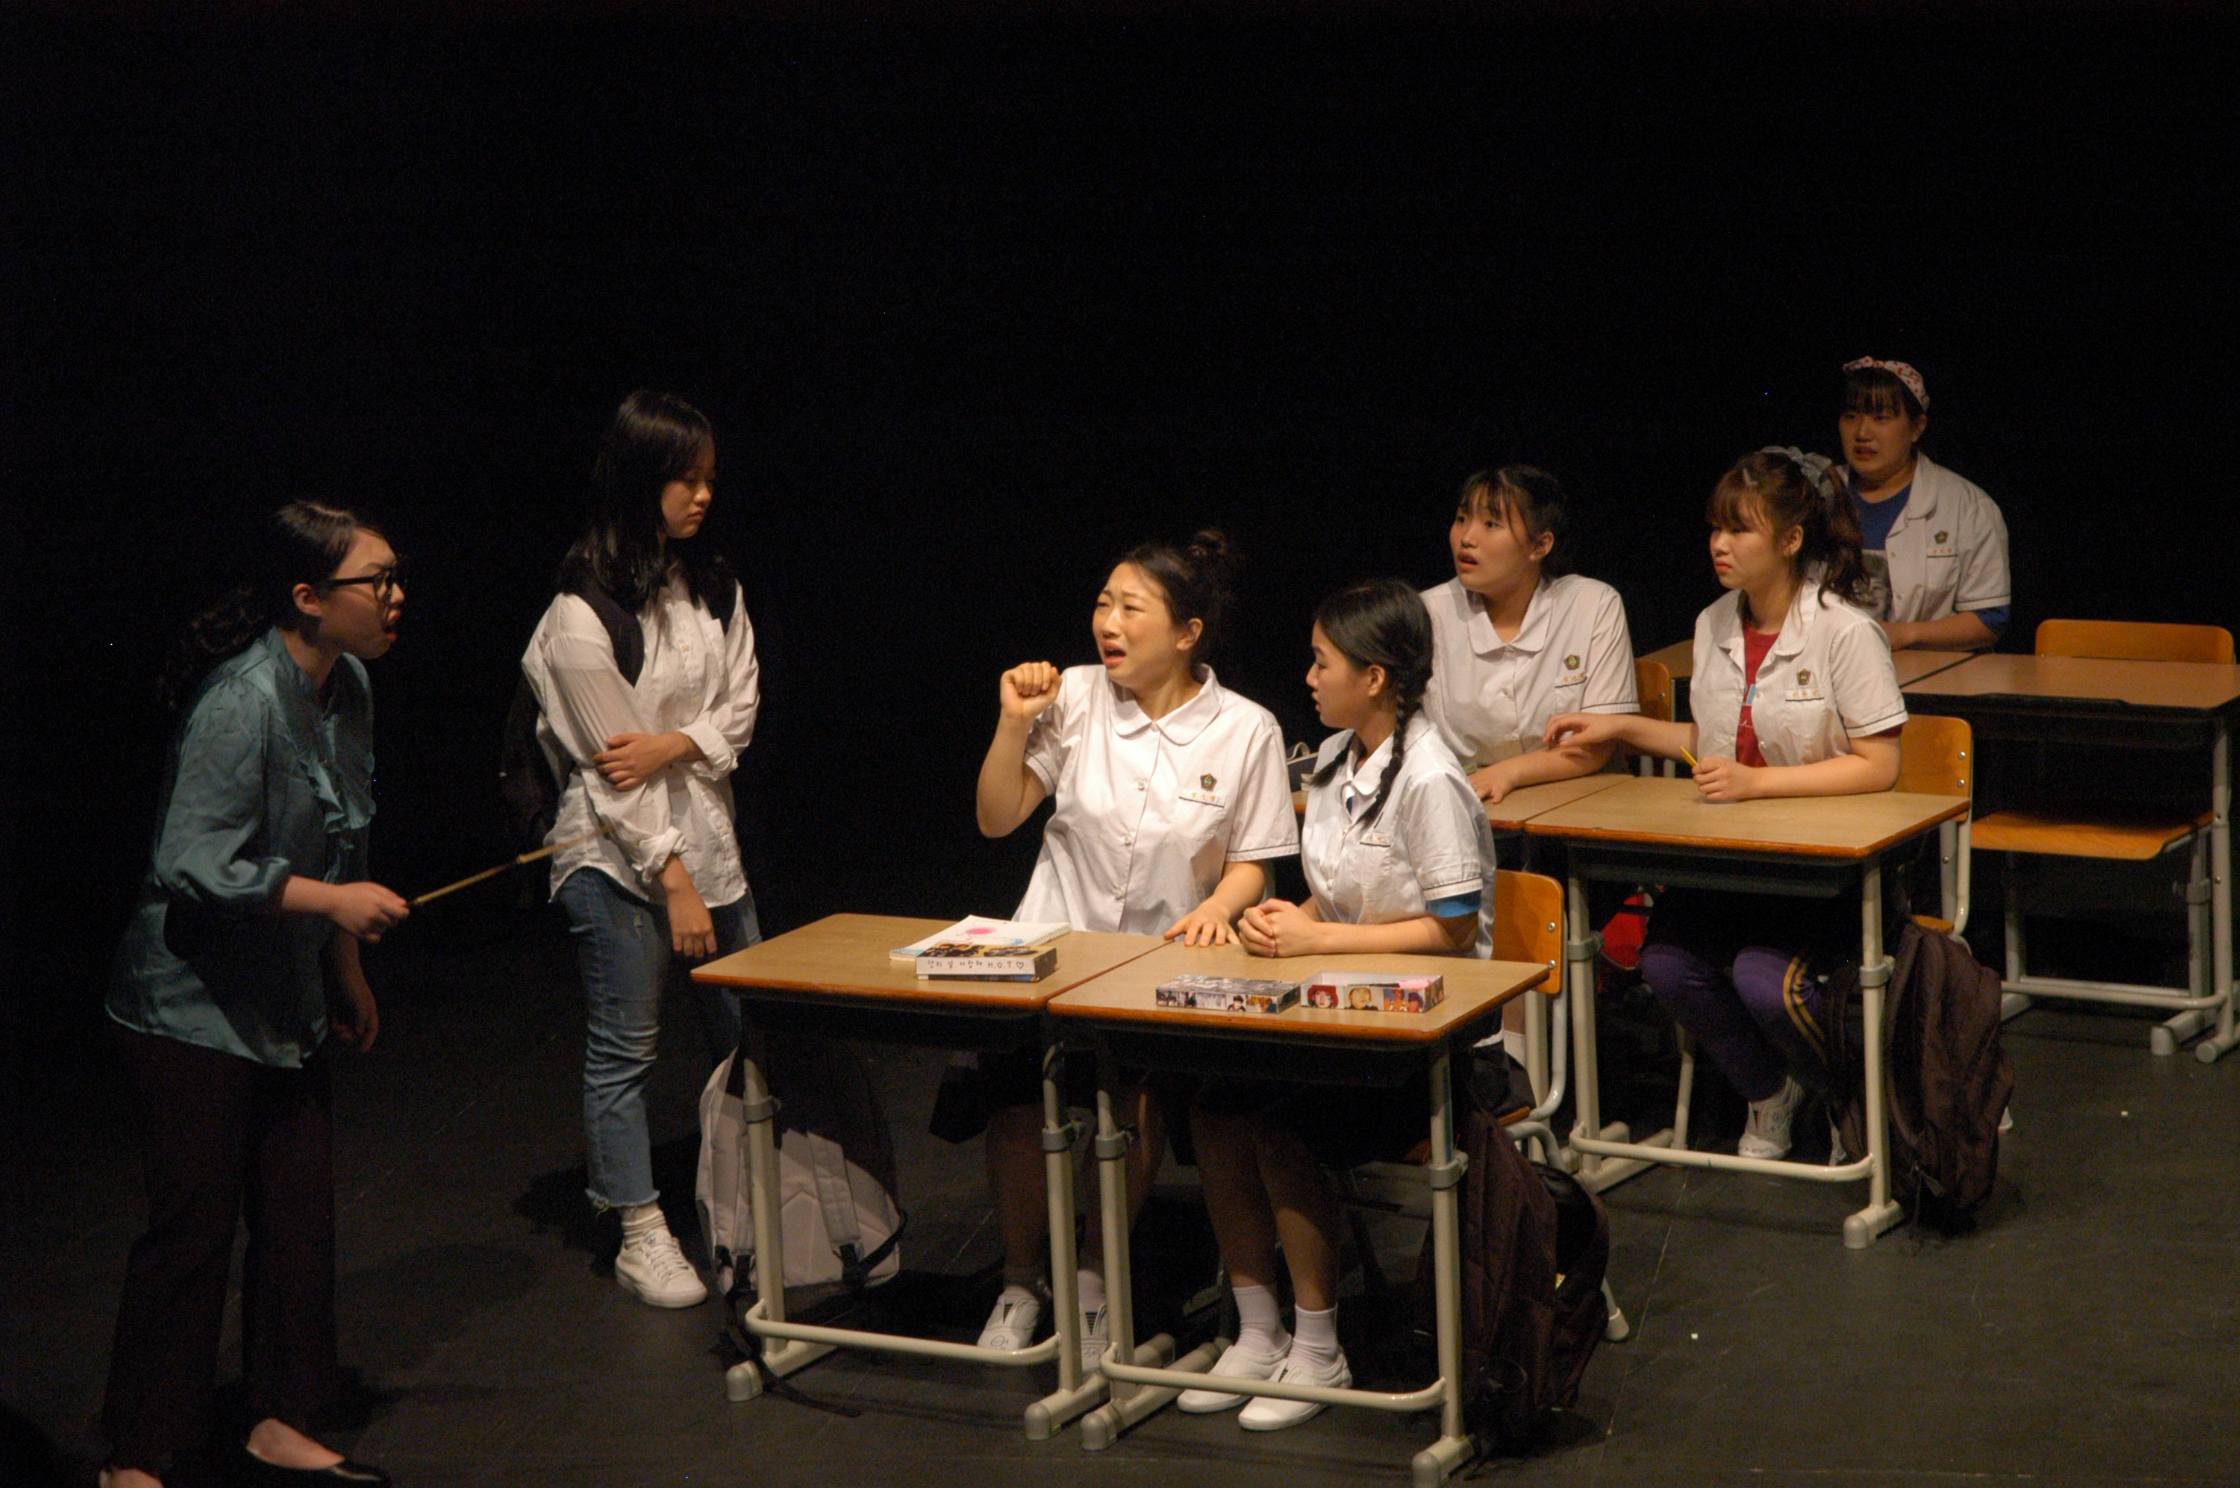 20221104-연극의 미래 전국 청소년들이 밀양에 온다(3).jpg